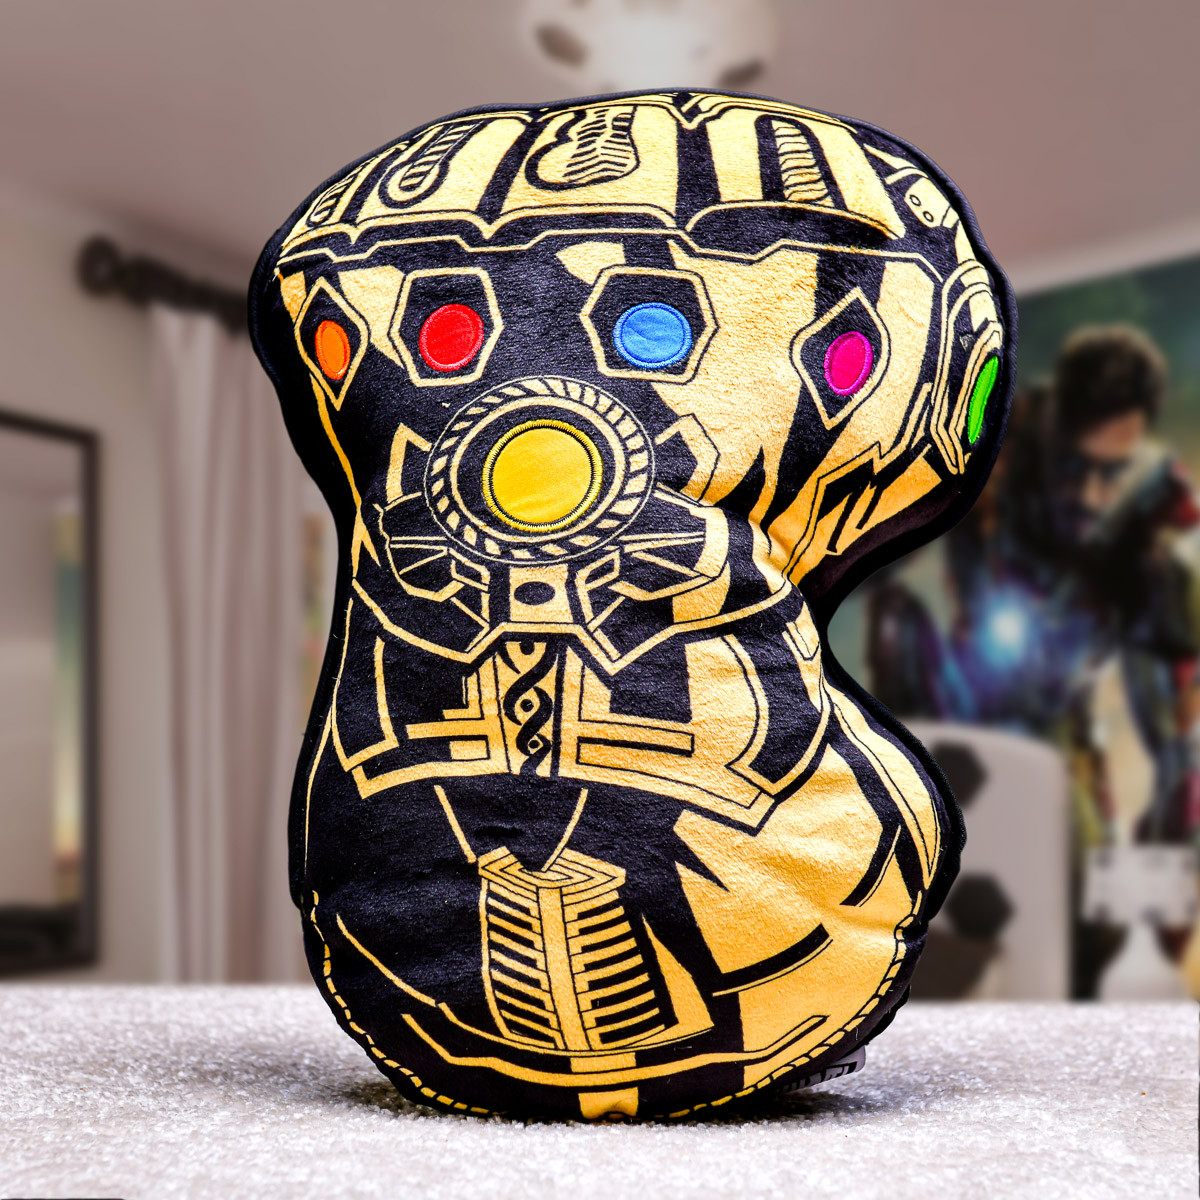 Iron Man vs. Thanos Kidboxeo